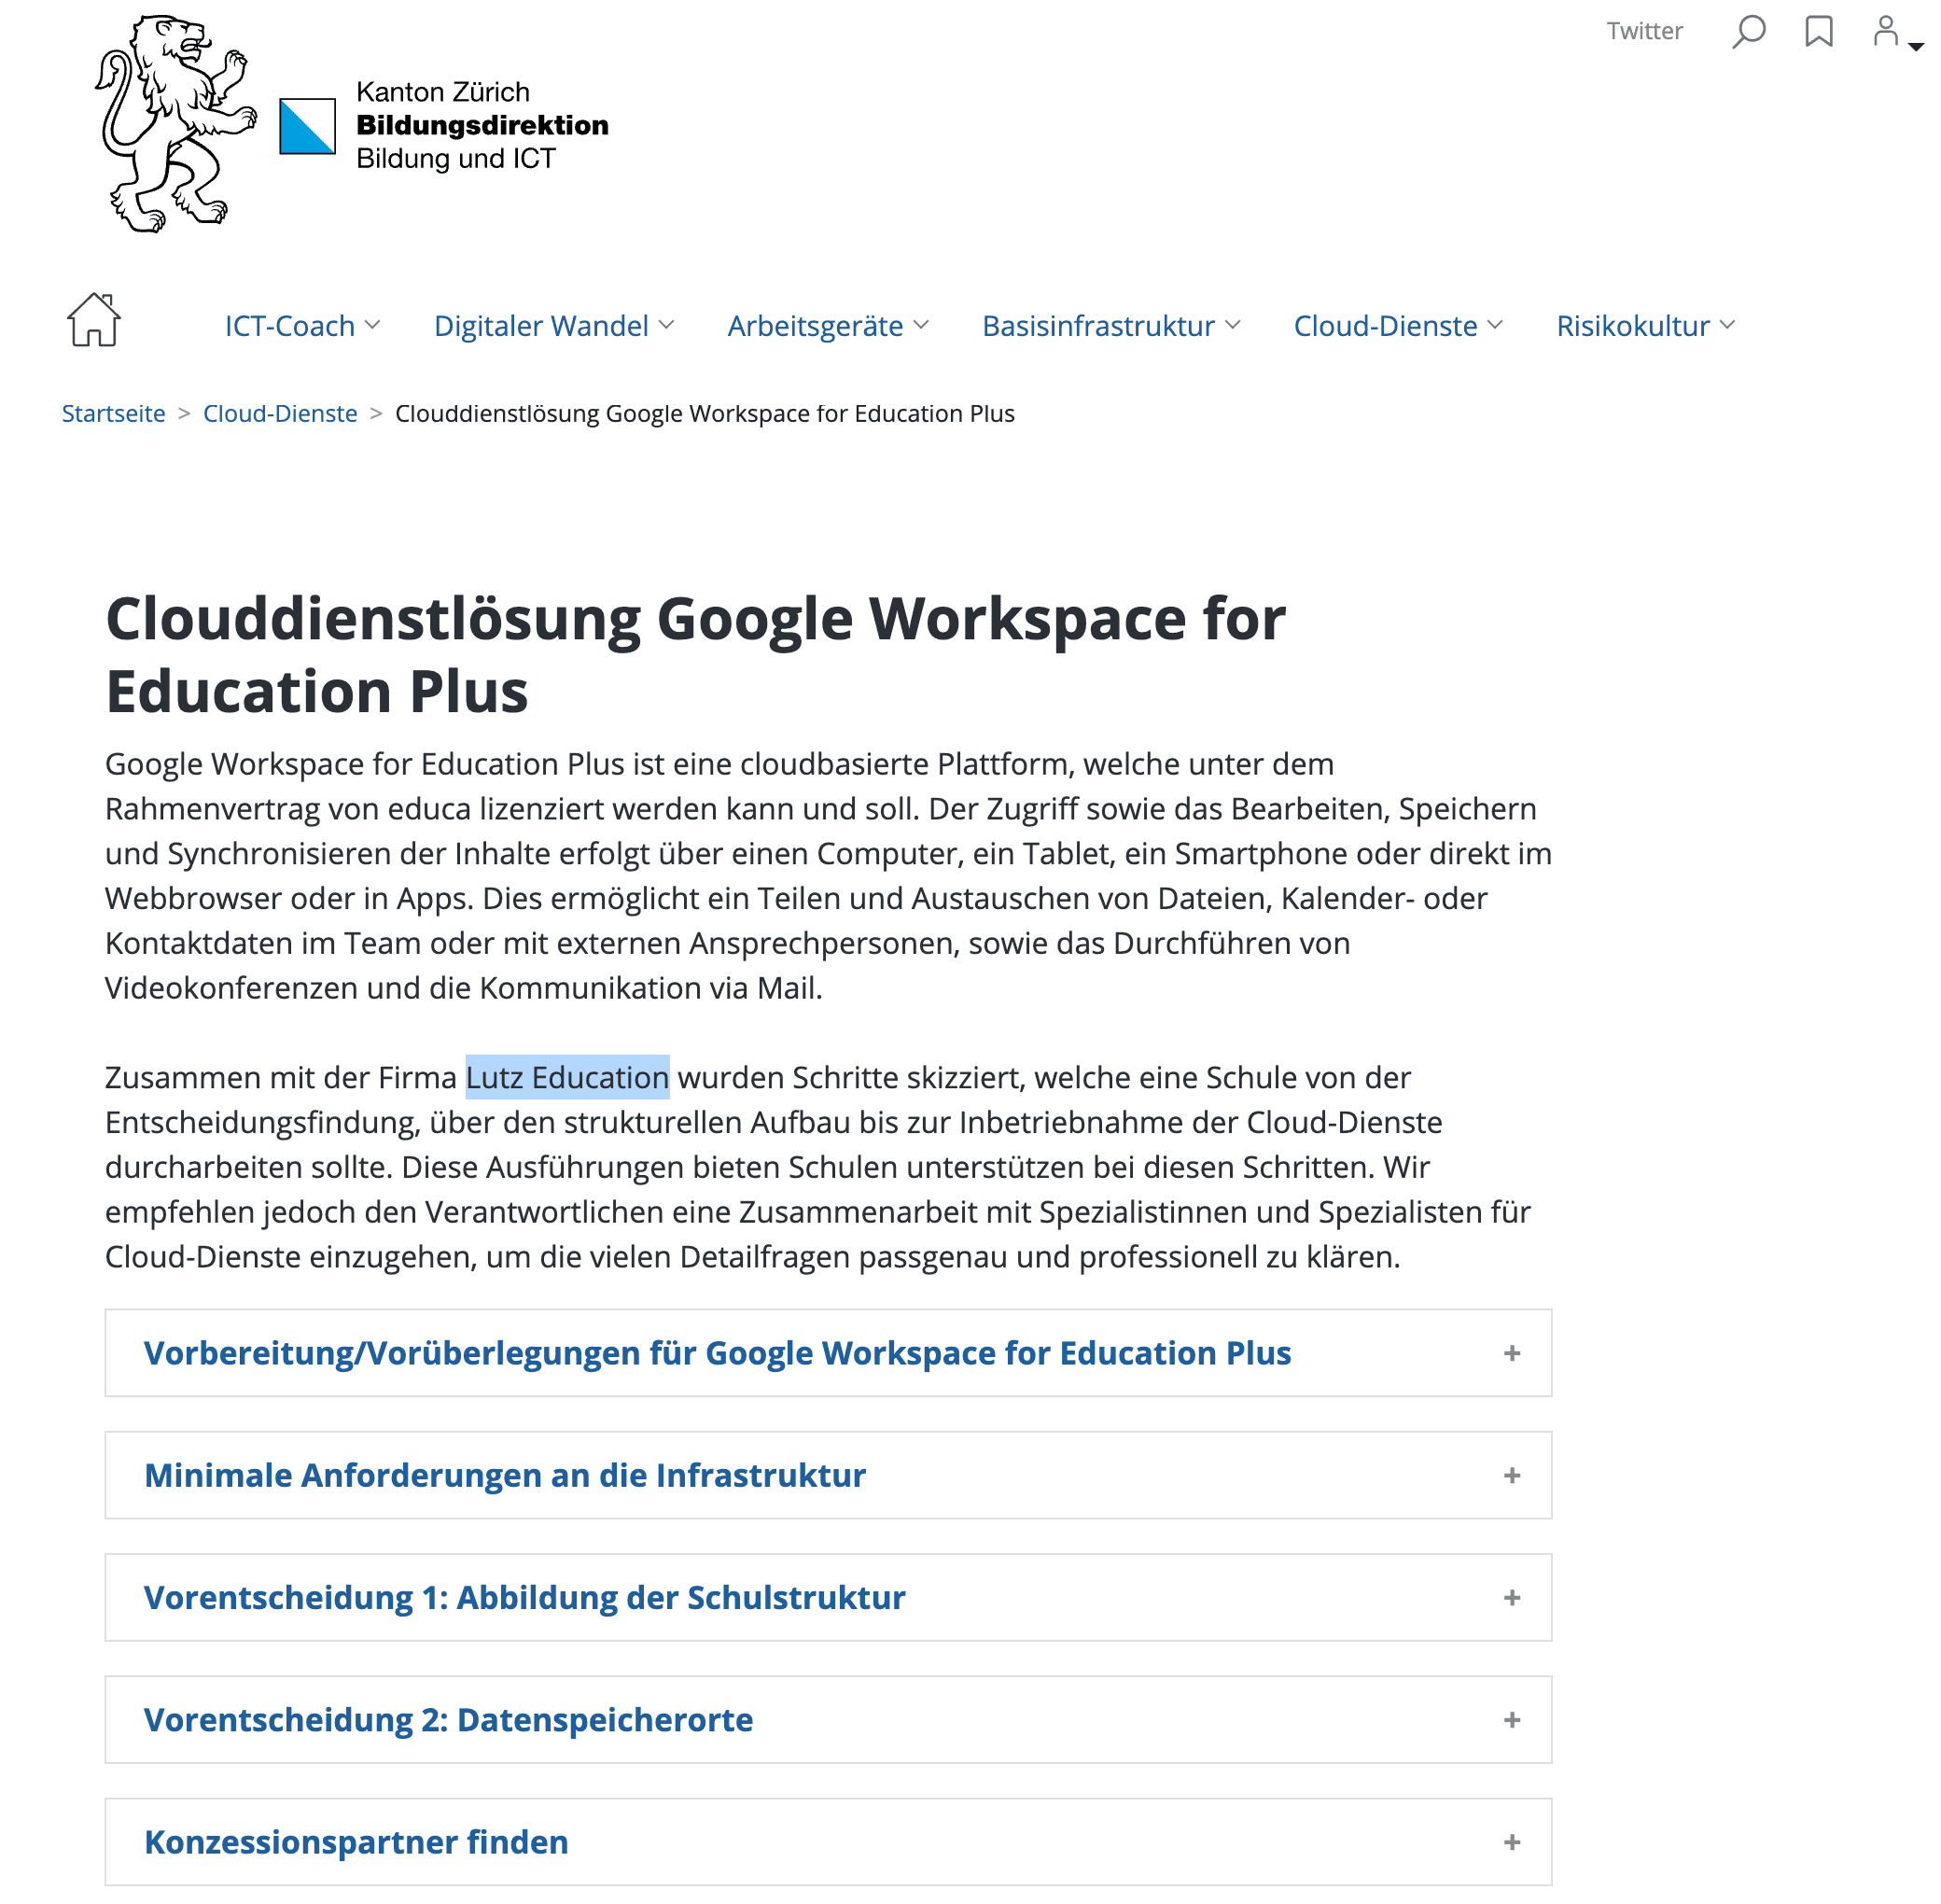 Clouddienstlösung Google Workspace for Education Plus